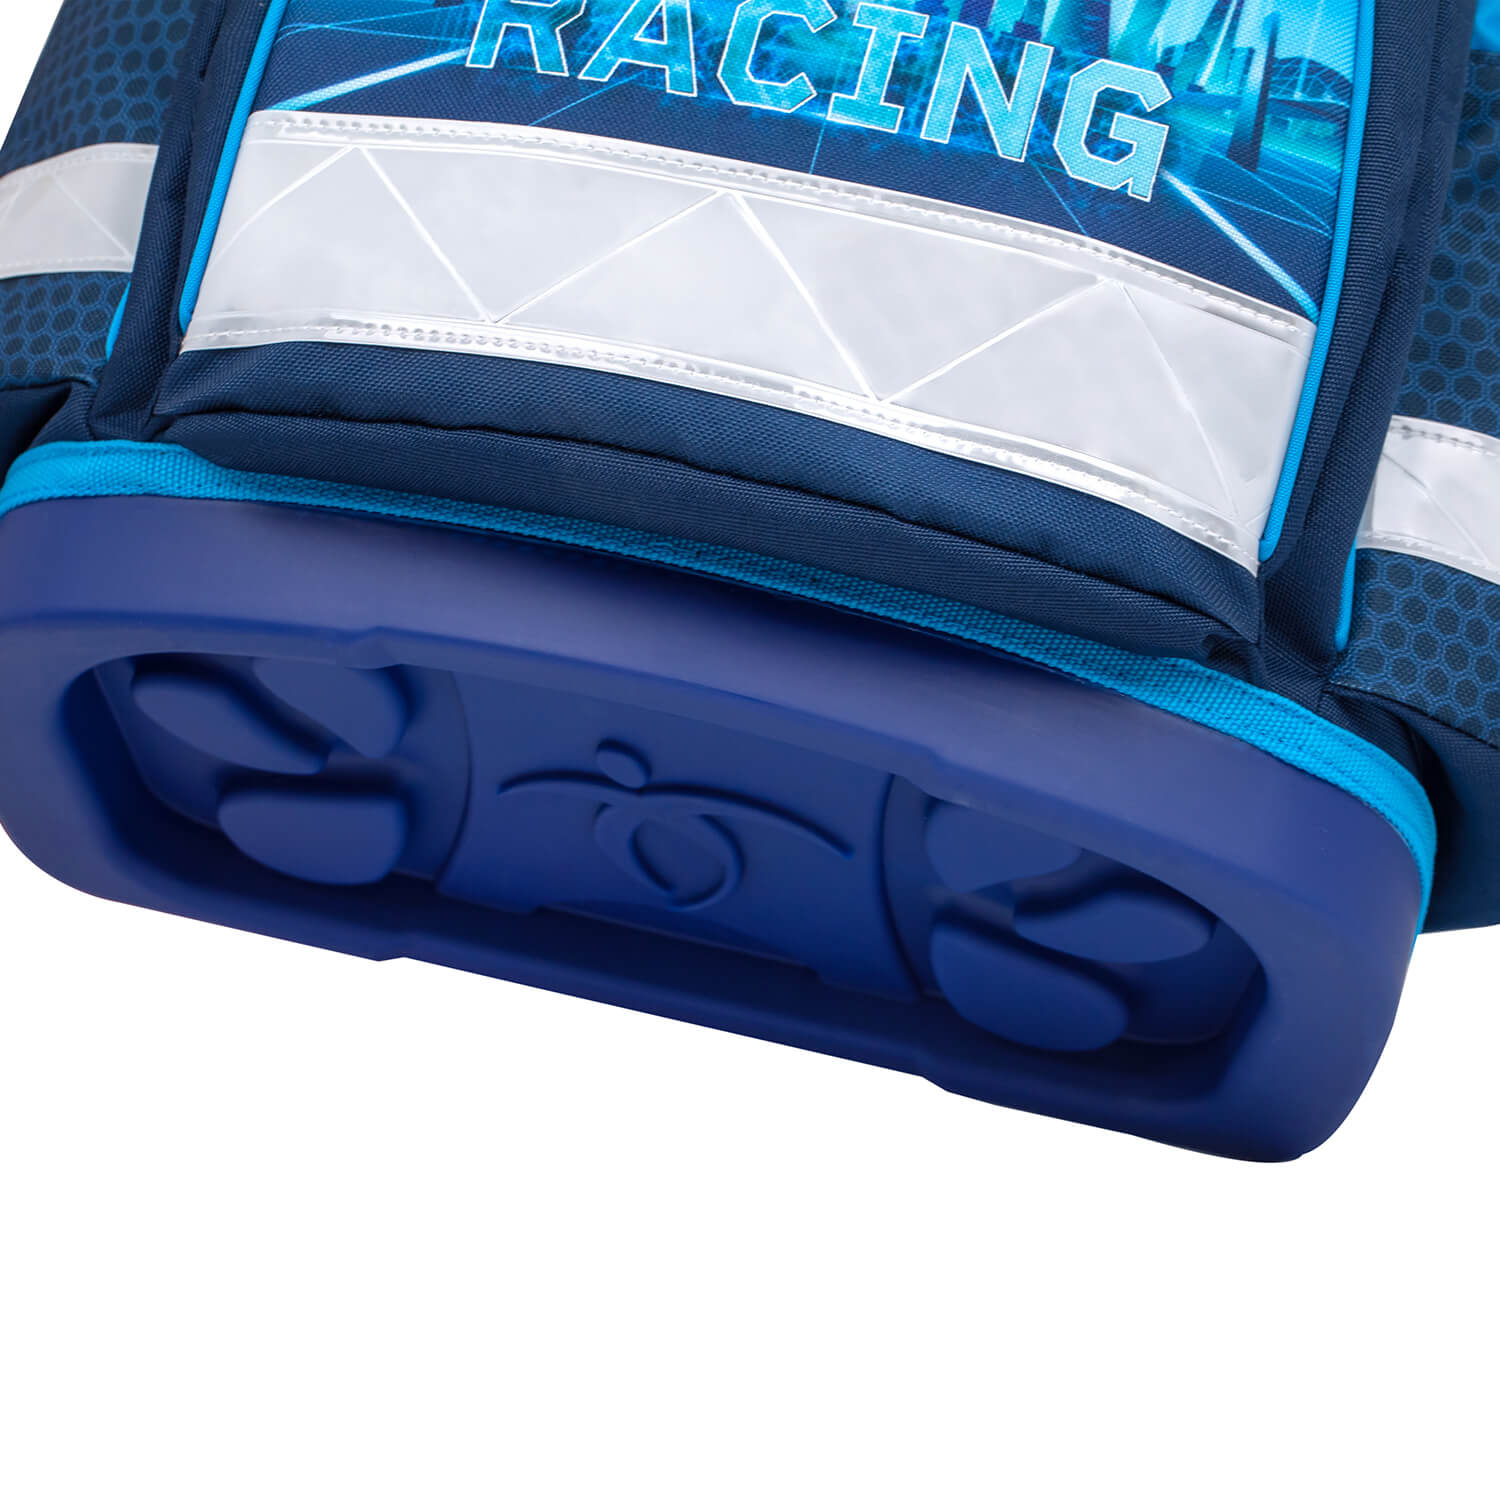 Classy Racing Blue Neon Schulranzen Set 5 tlg. mit GRATIS Schlüsselanhänger